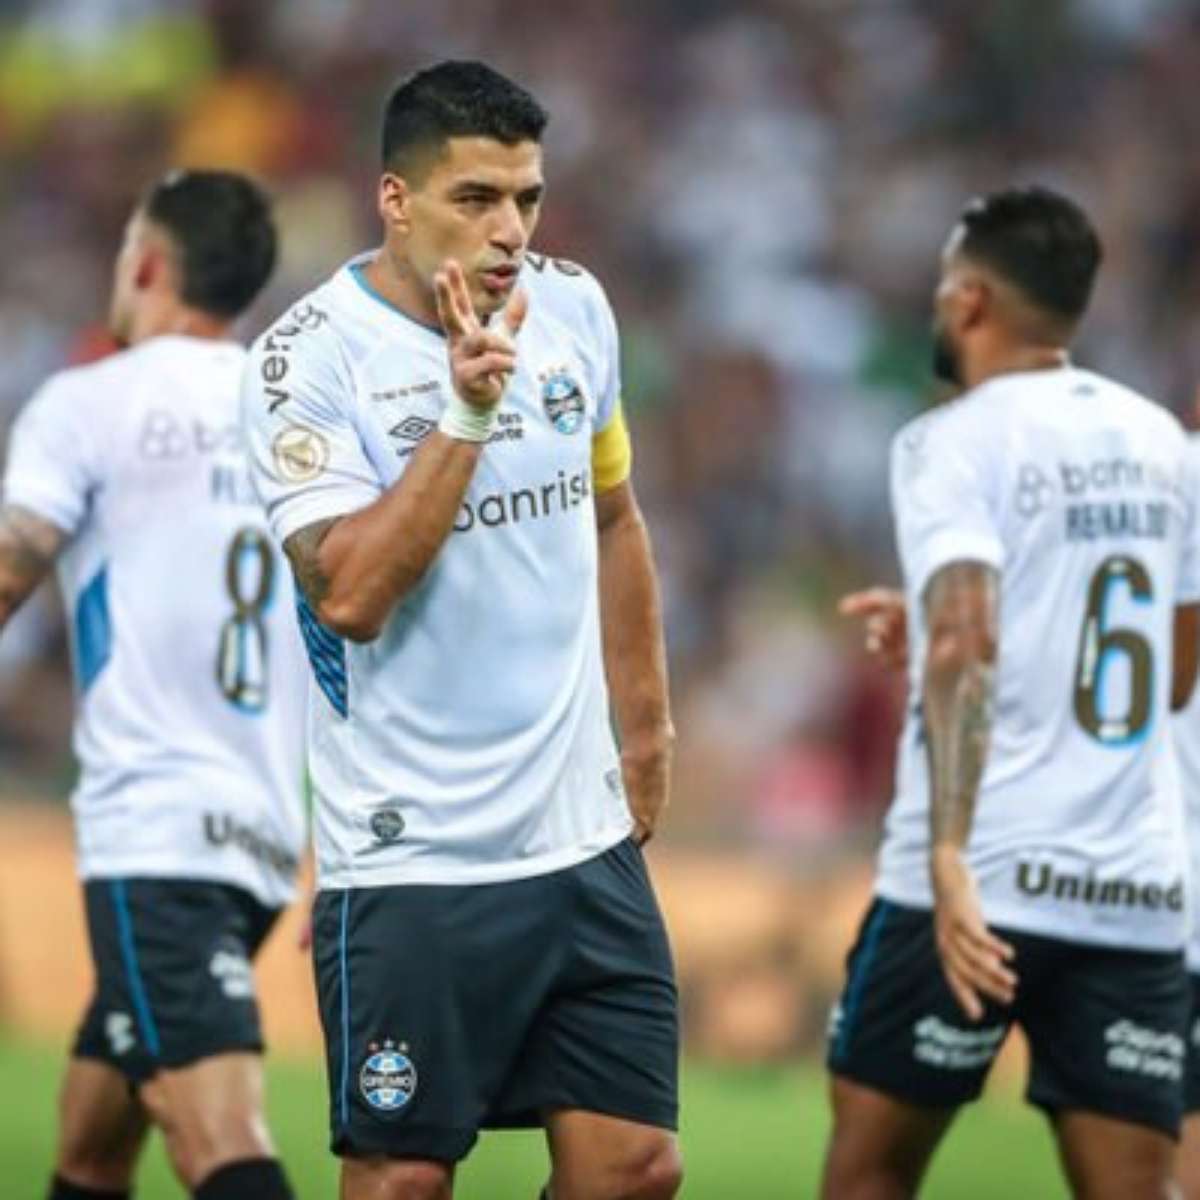 Luis Suárez acerta com o Inter Miami e frusta torcedores do Grêmio